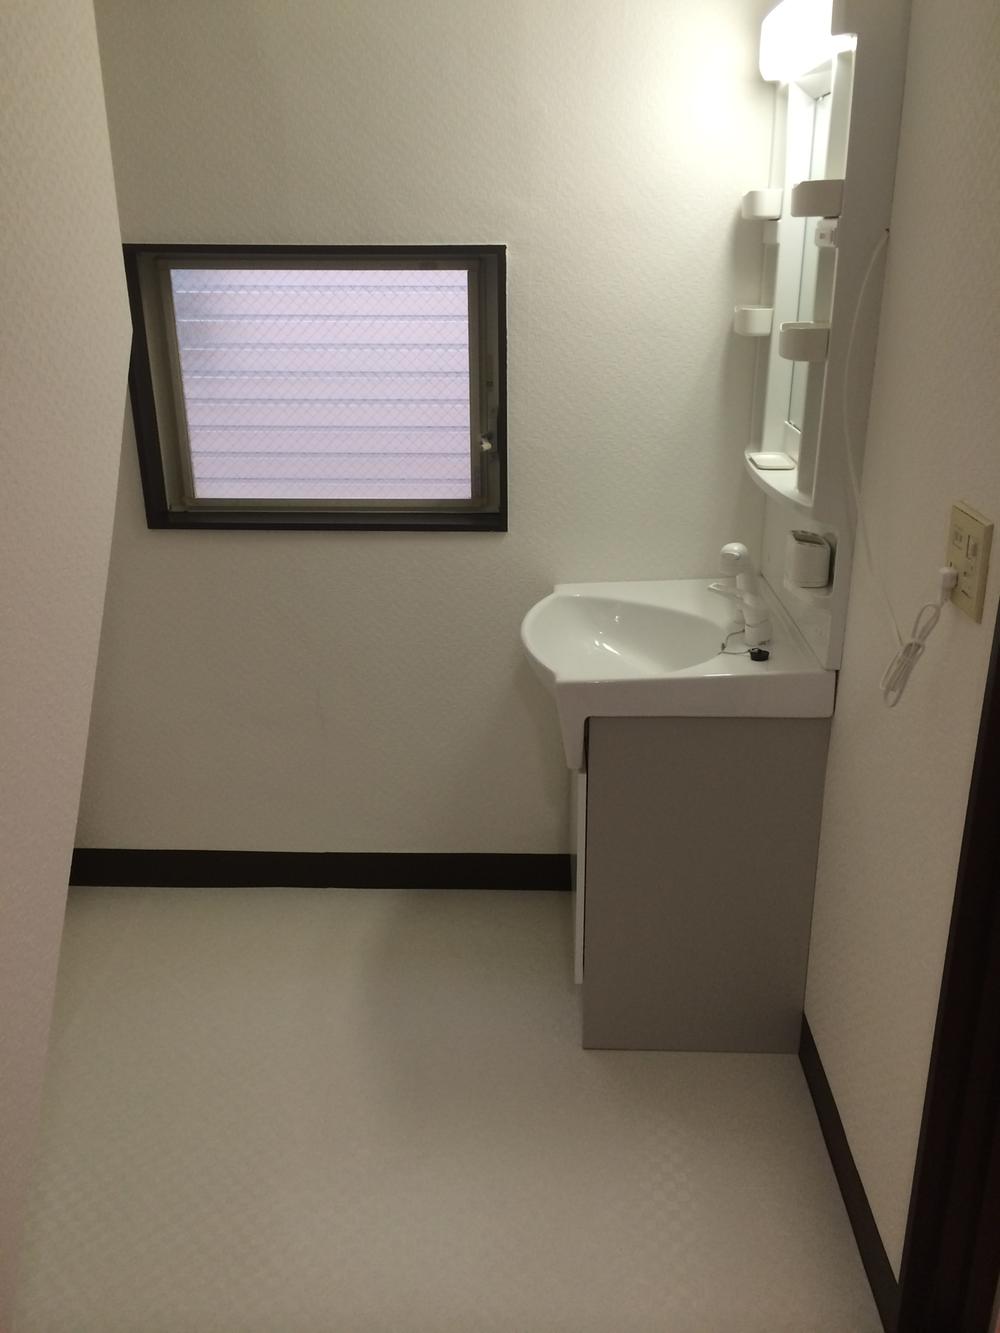 Wash basin, toilet. Indoor (01 May 2014) Shooting